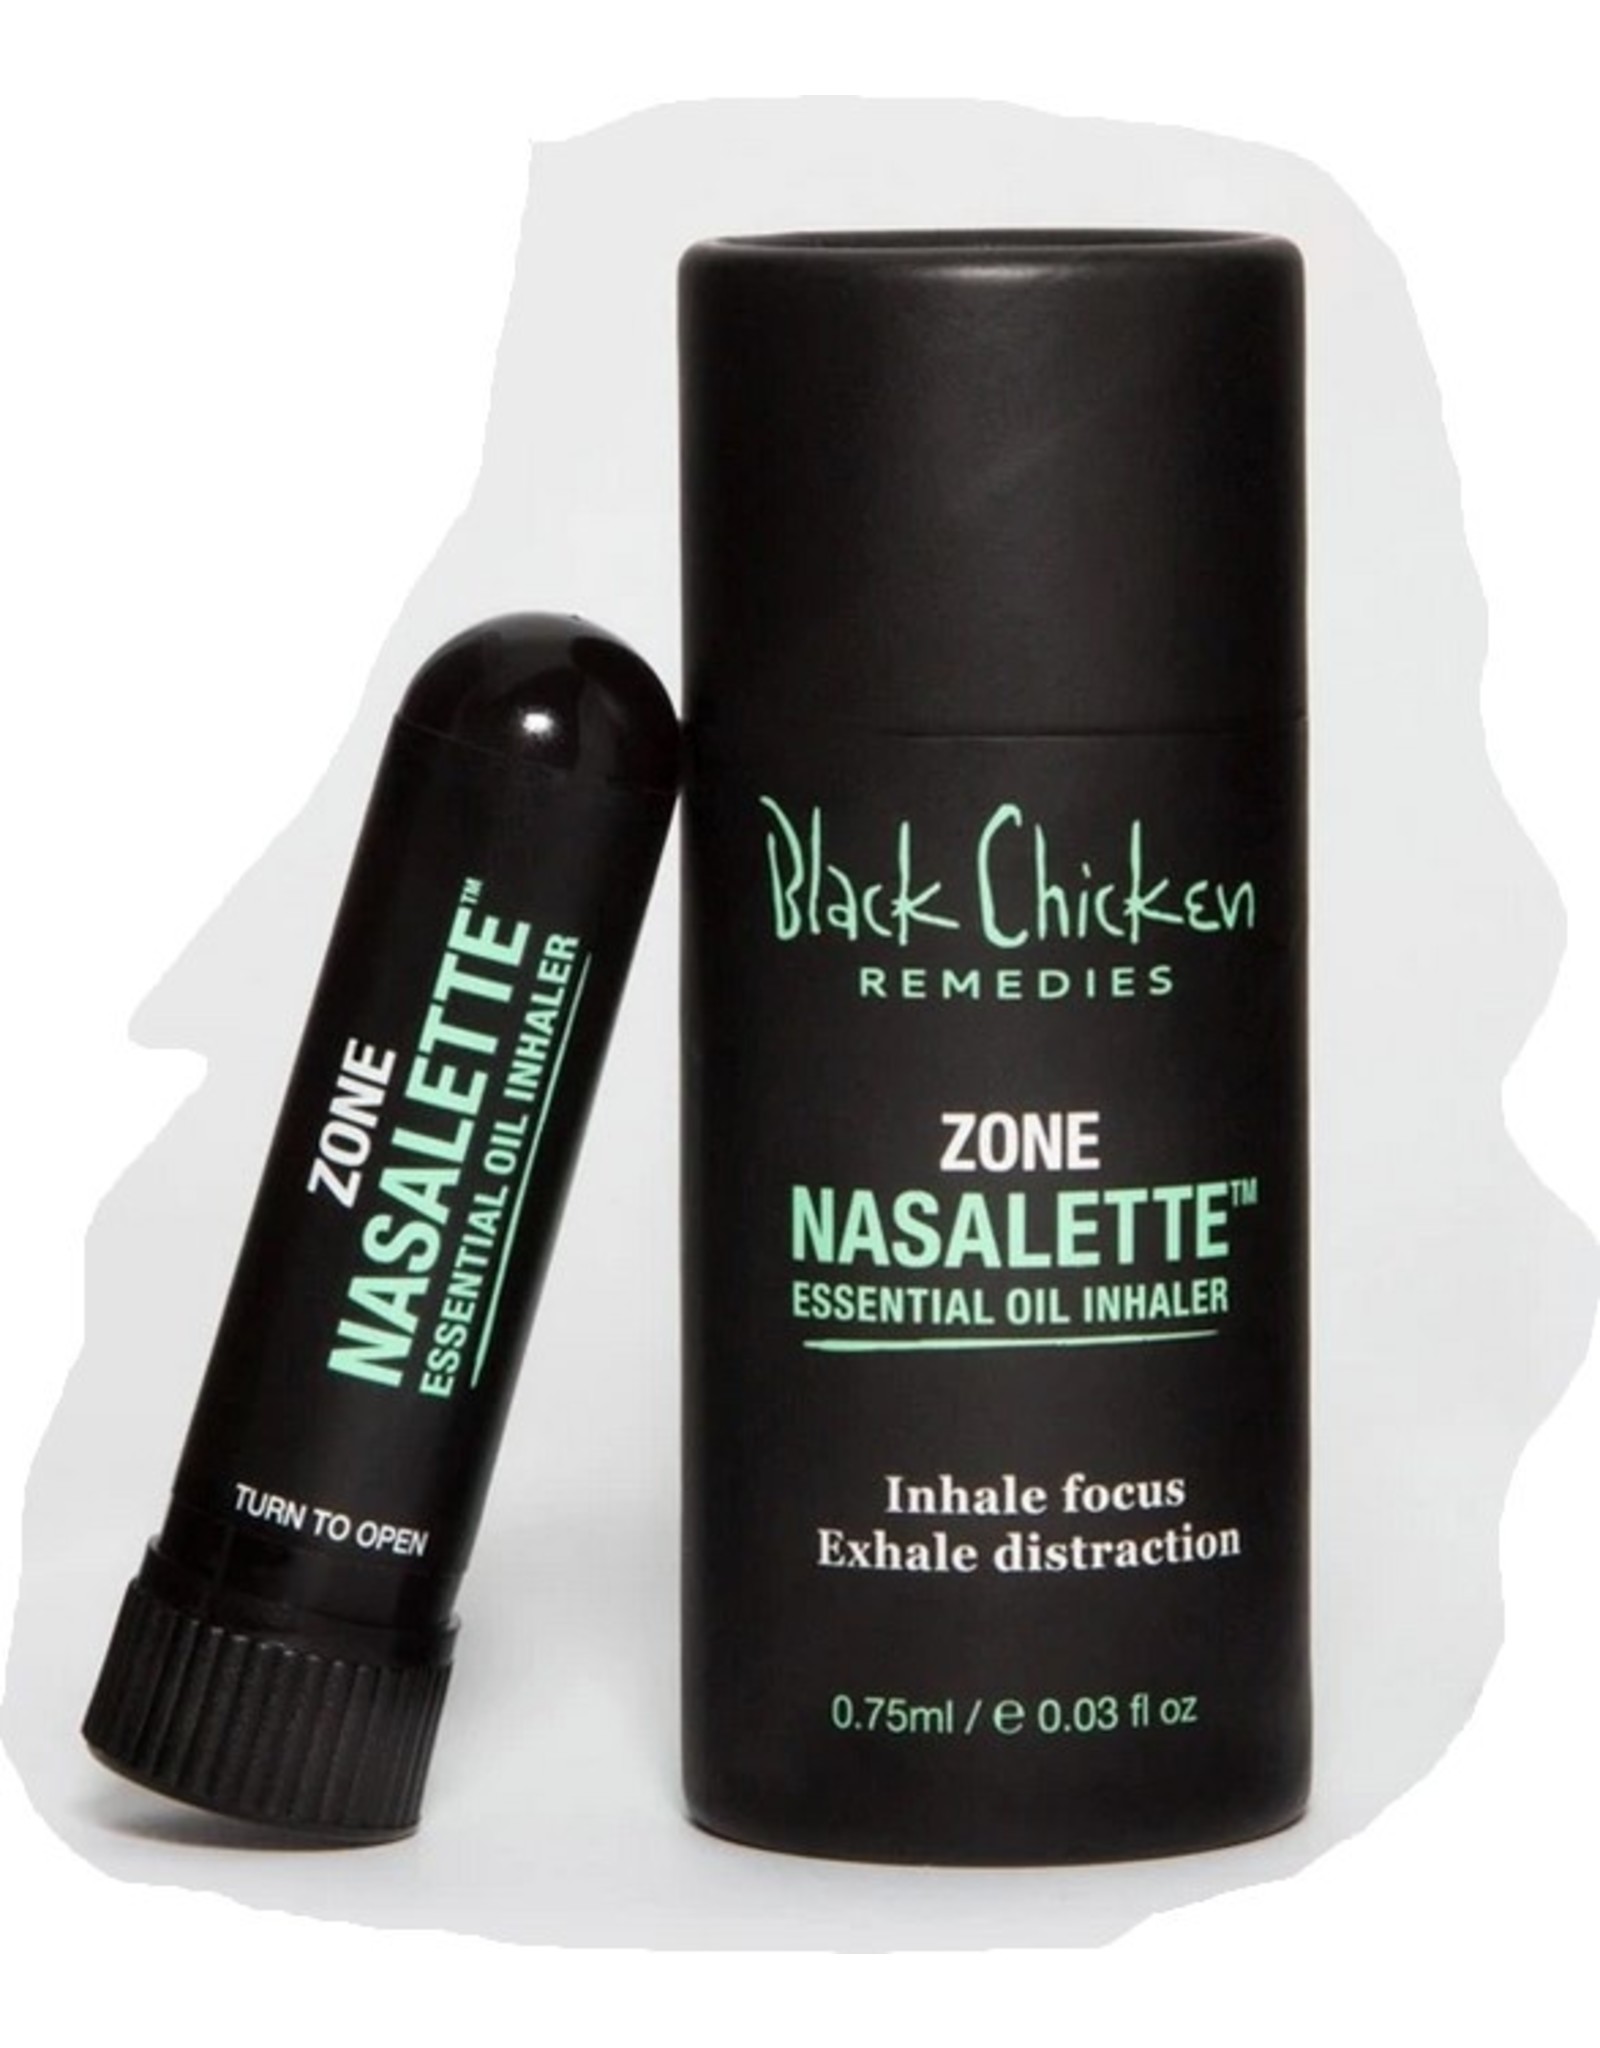 Black Chicken Zone Nasalette - Natural Essential Oil Inhaler